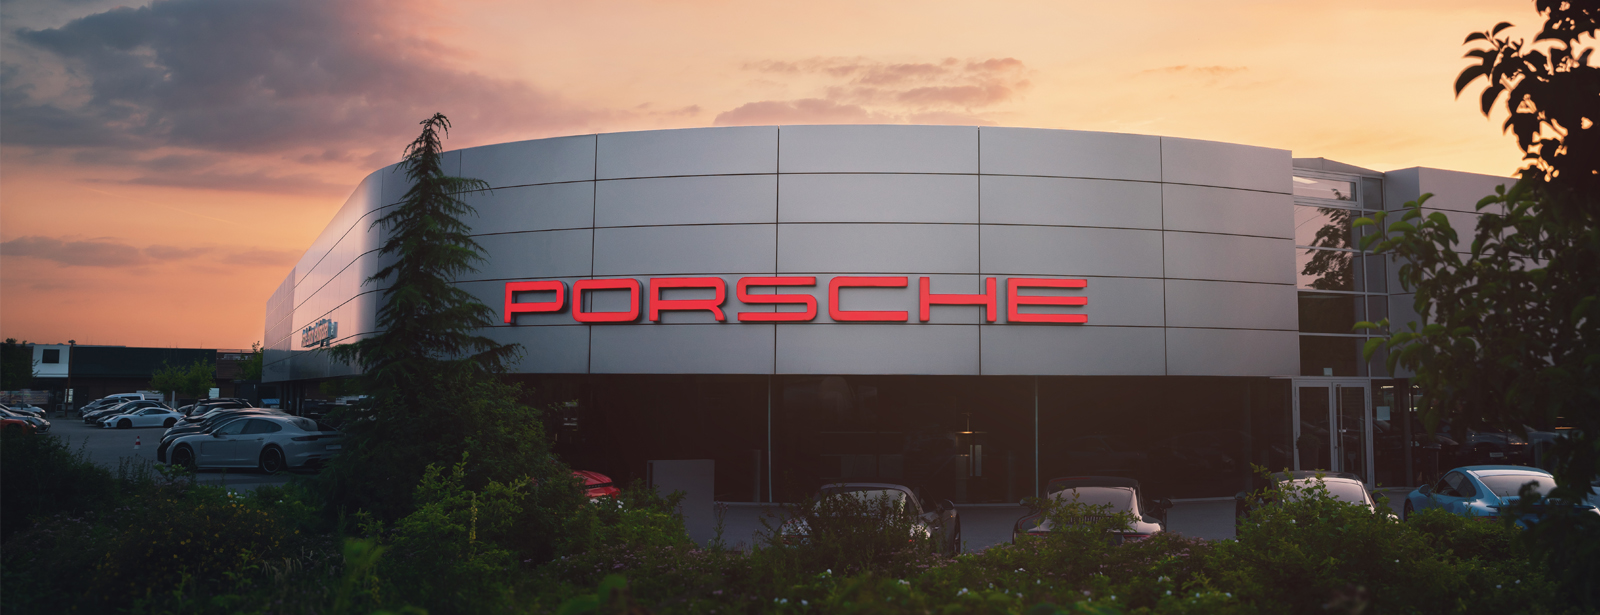 <b>Porsche Zentrum Recklinghausen</b>